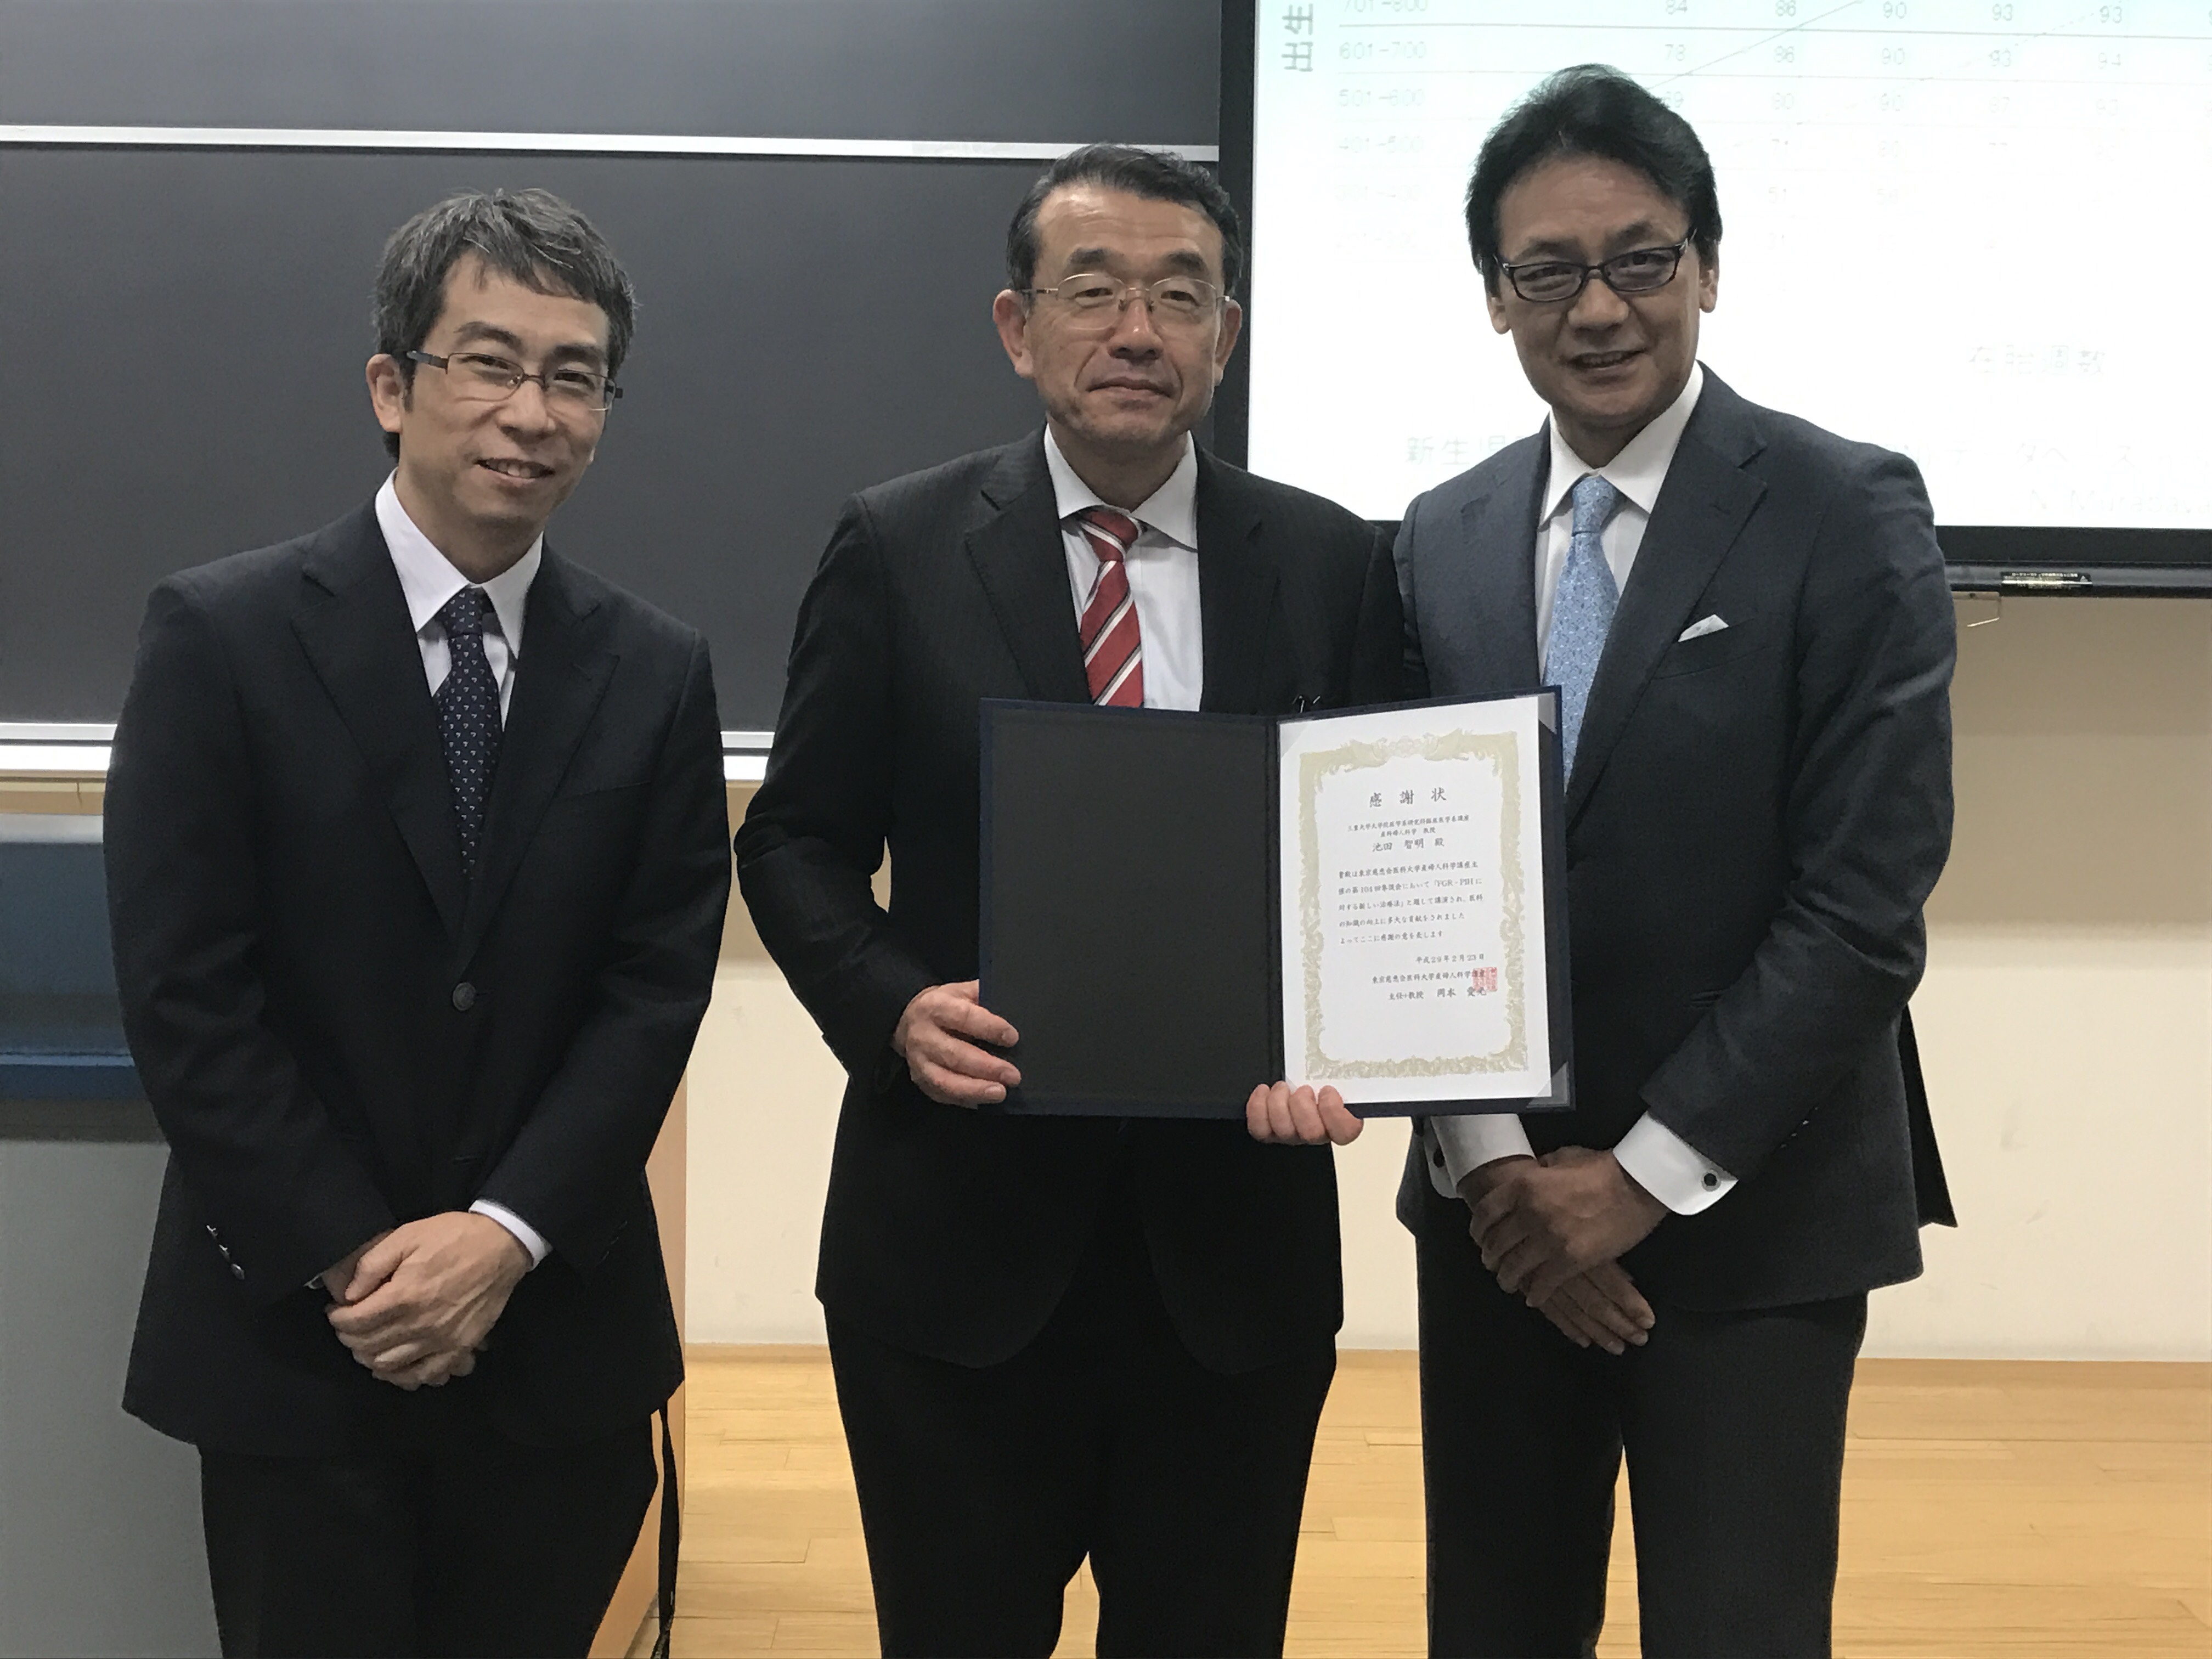 第104回集談会で三重大学の池田智明先生にご講演頂きました